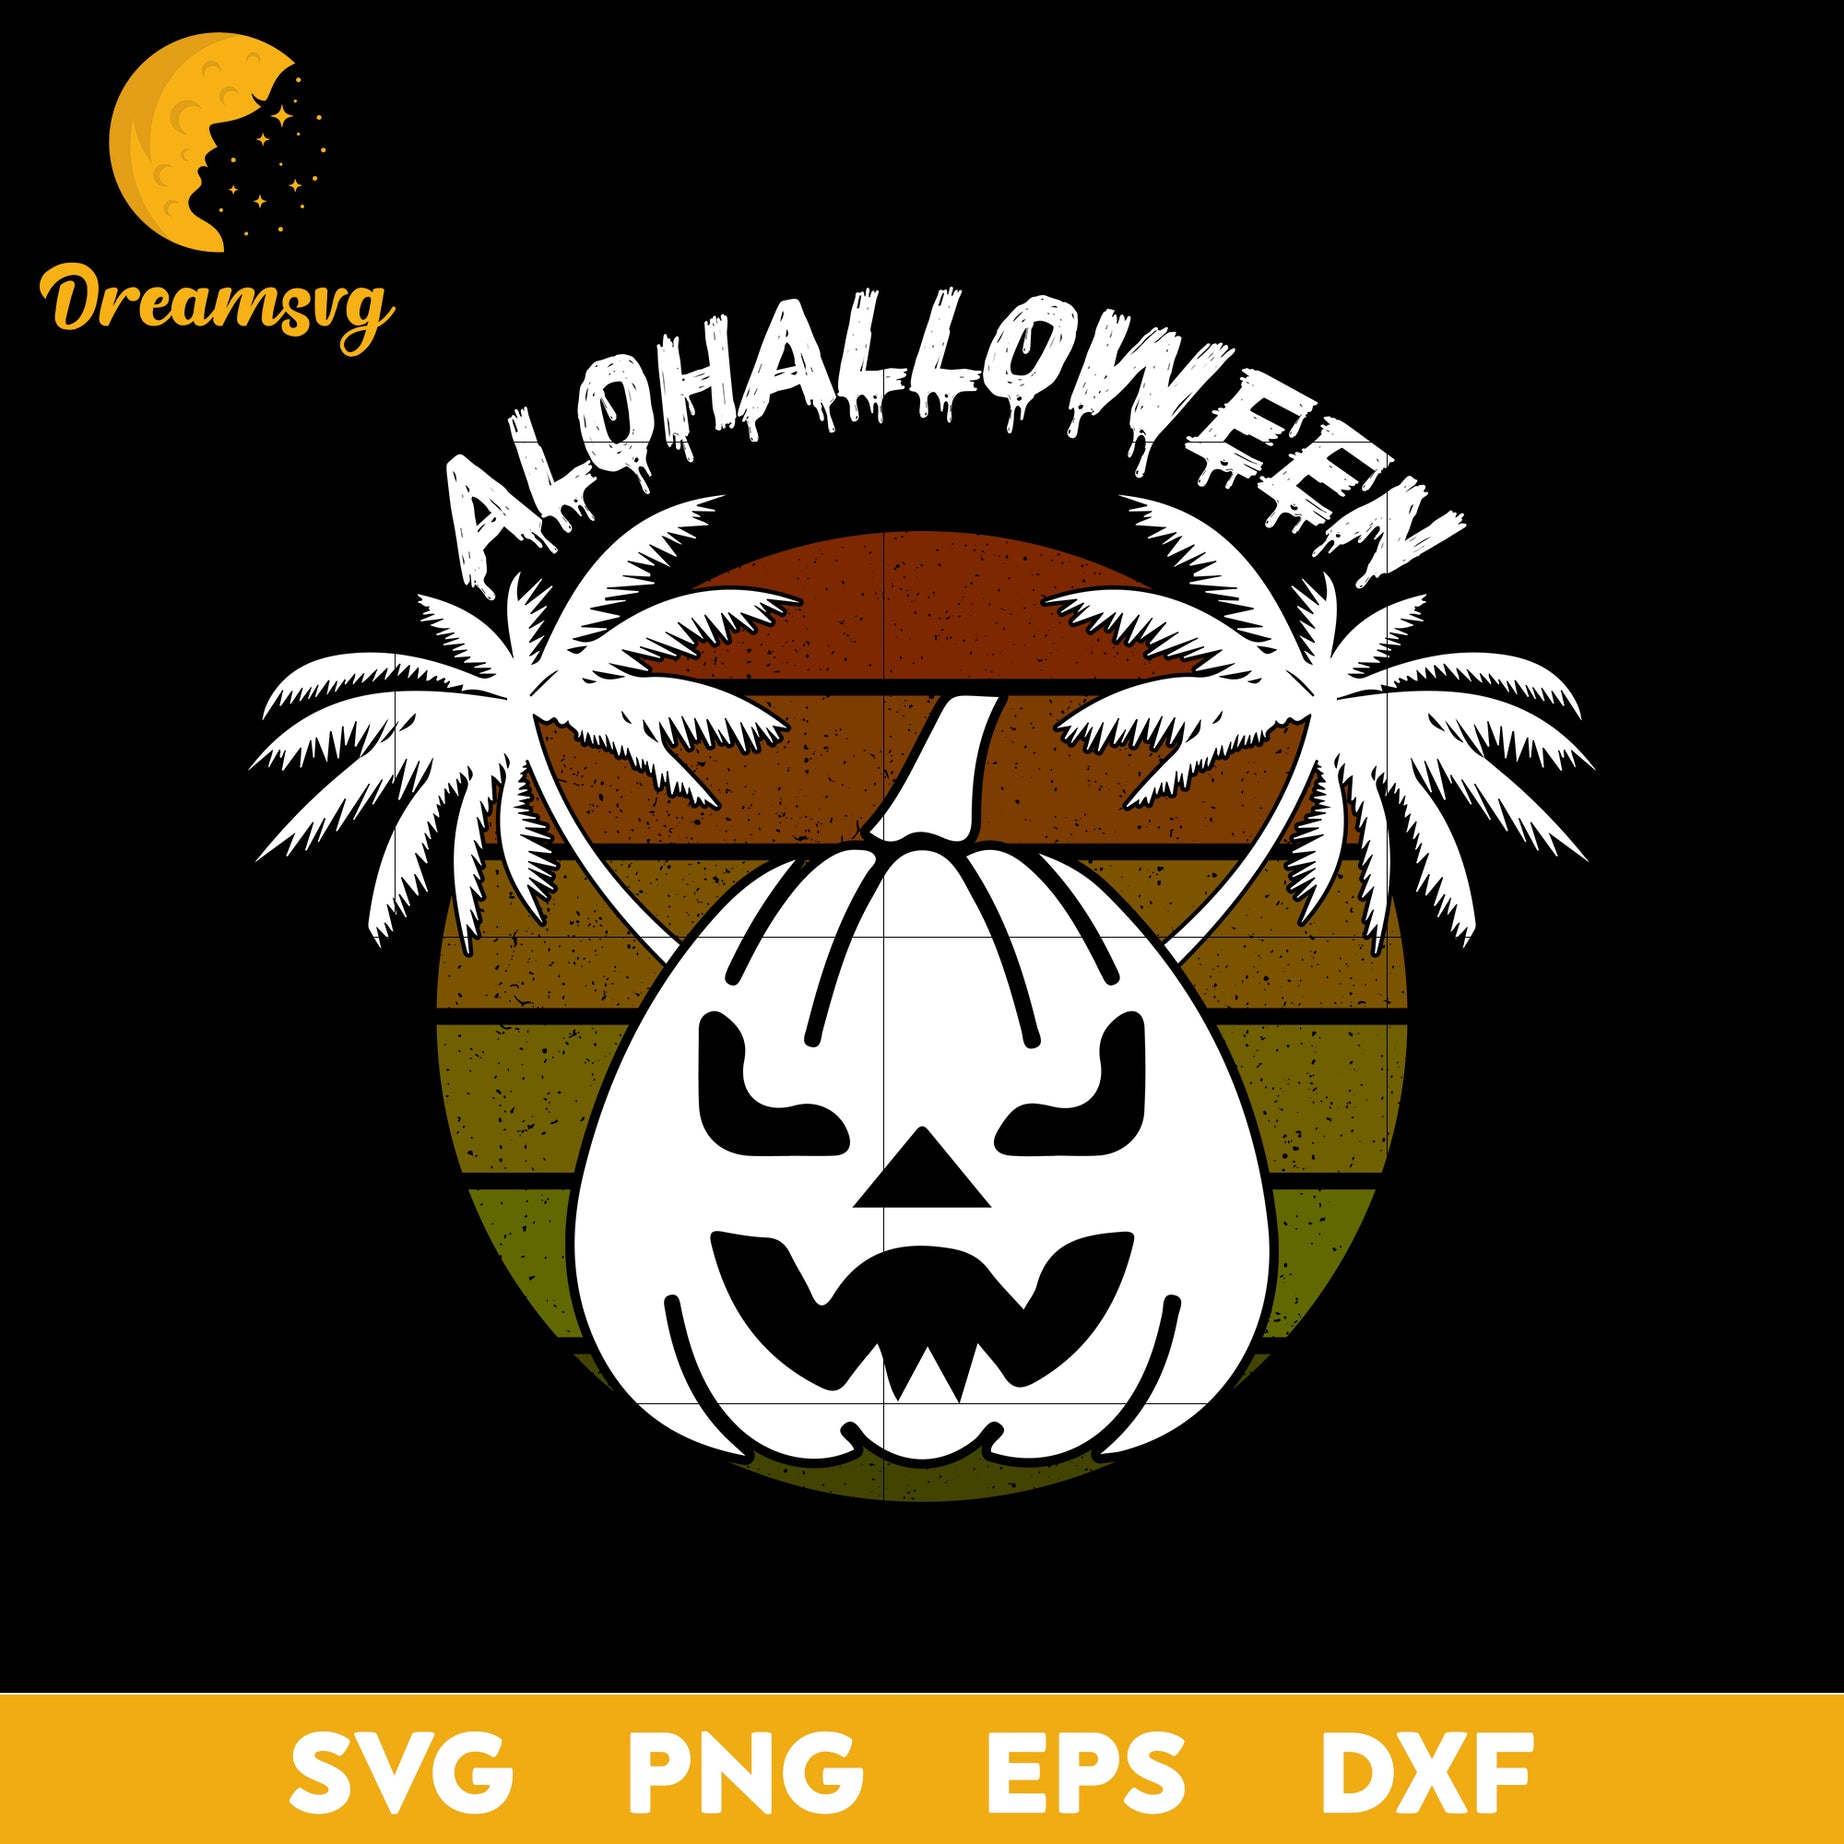 Ola halloween svg, Halloween svg, png, dxf, eps digital file.